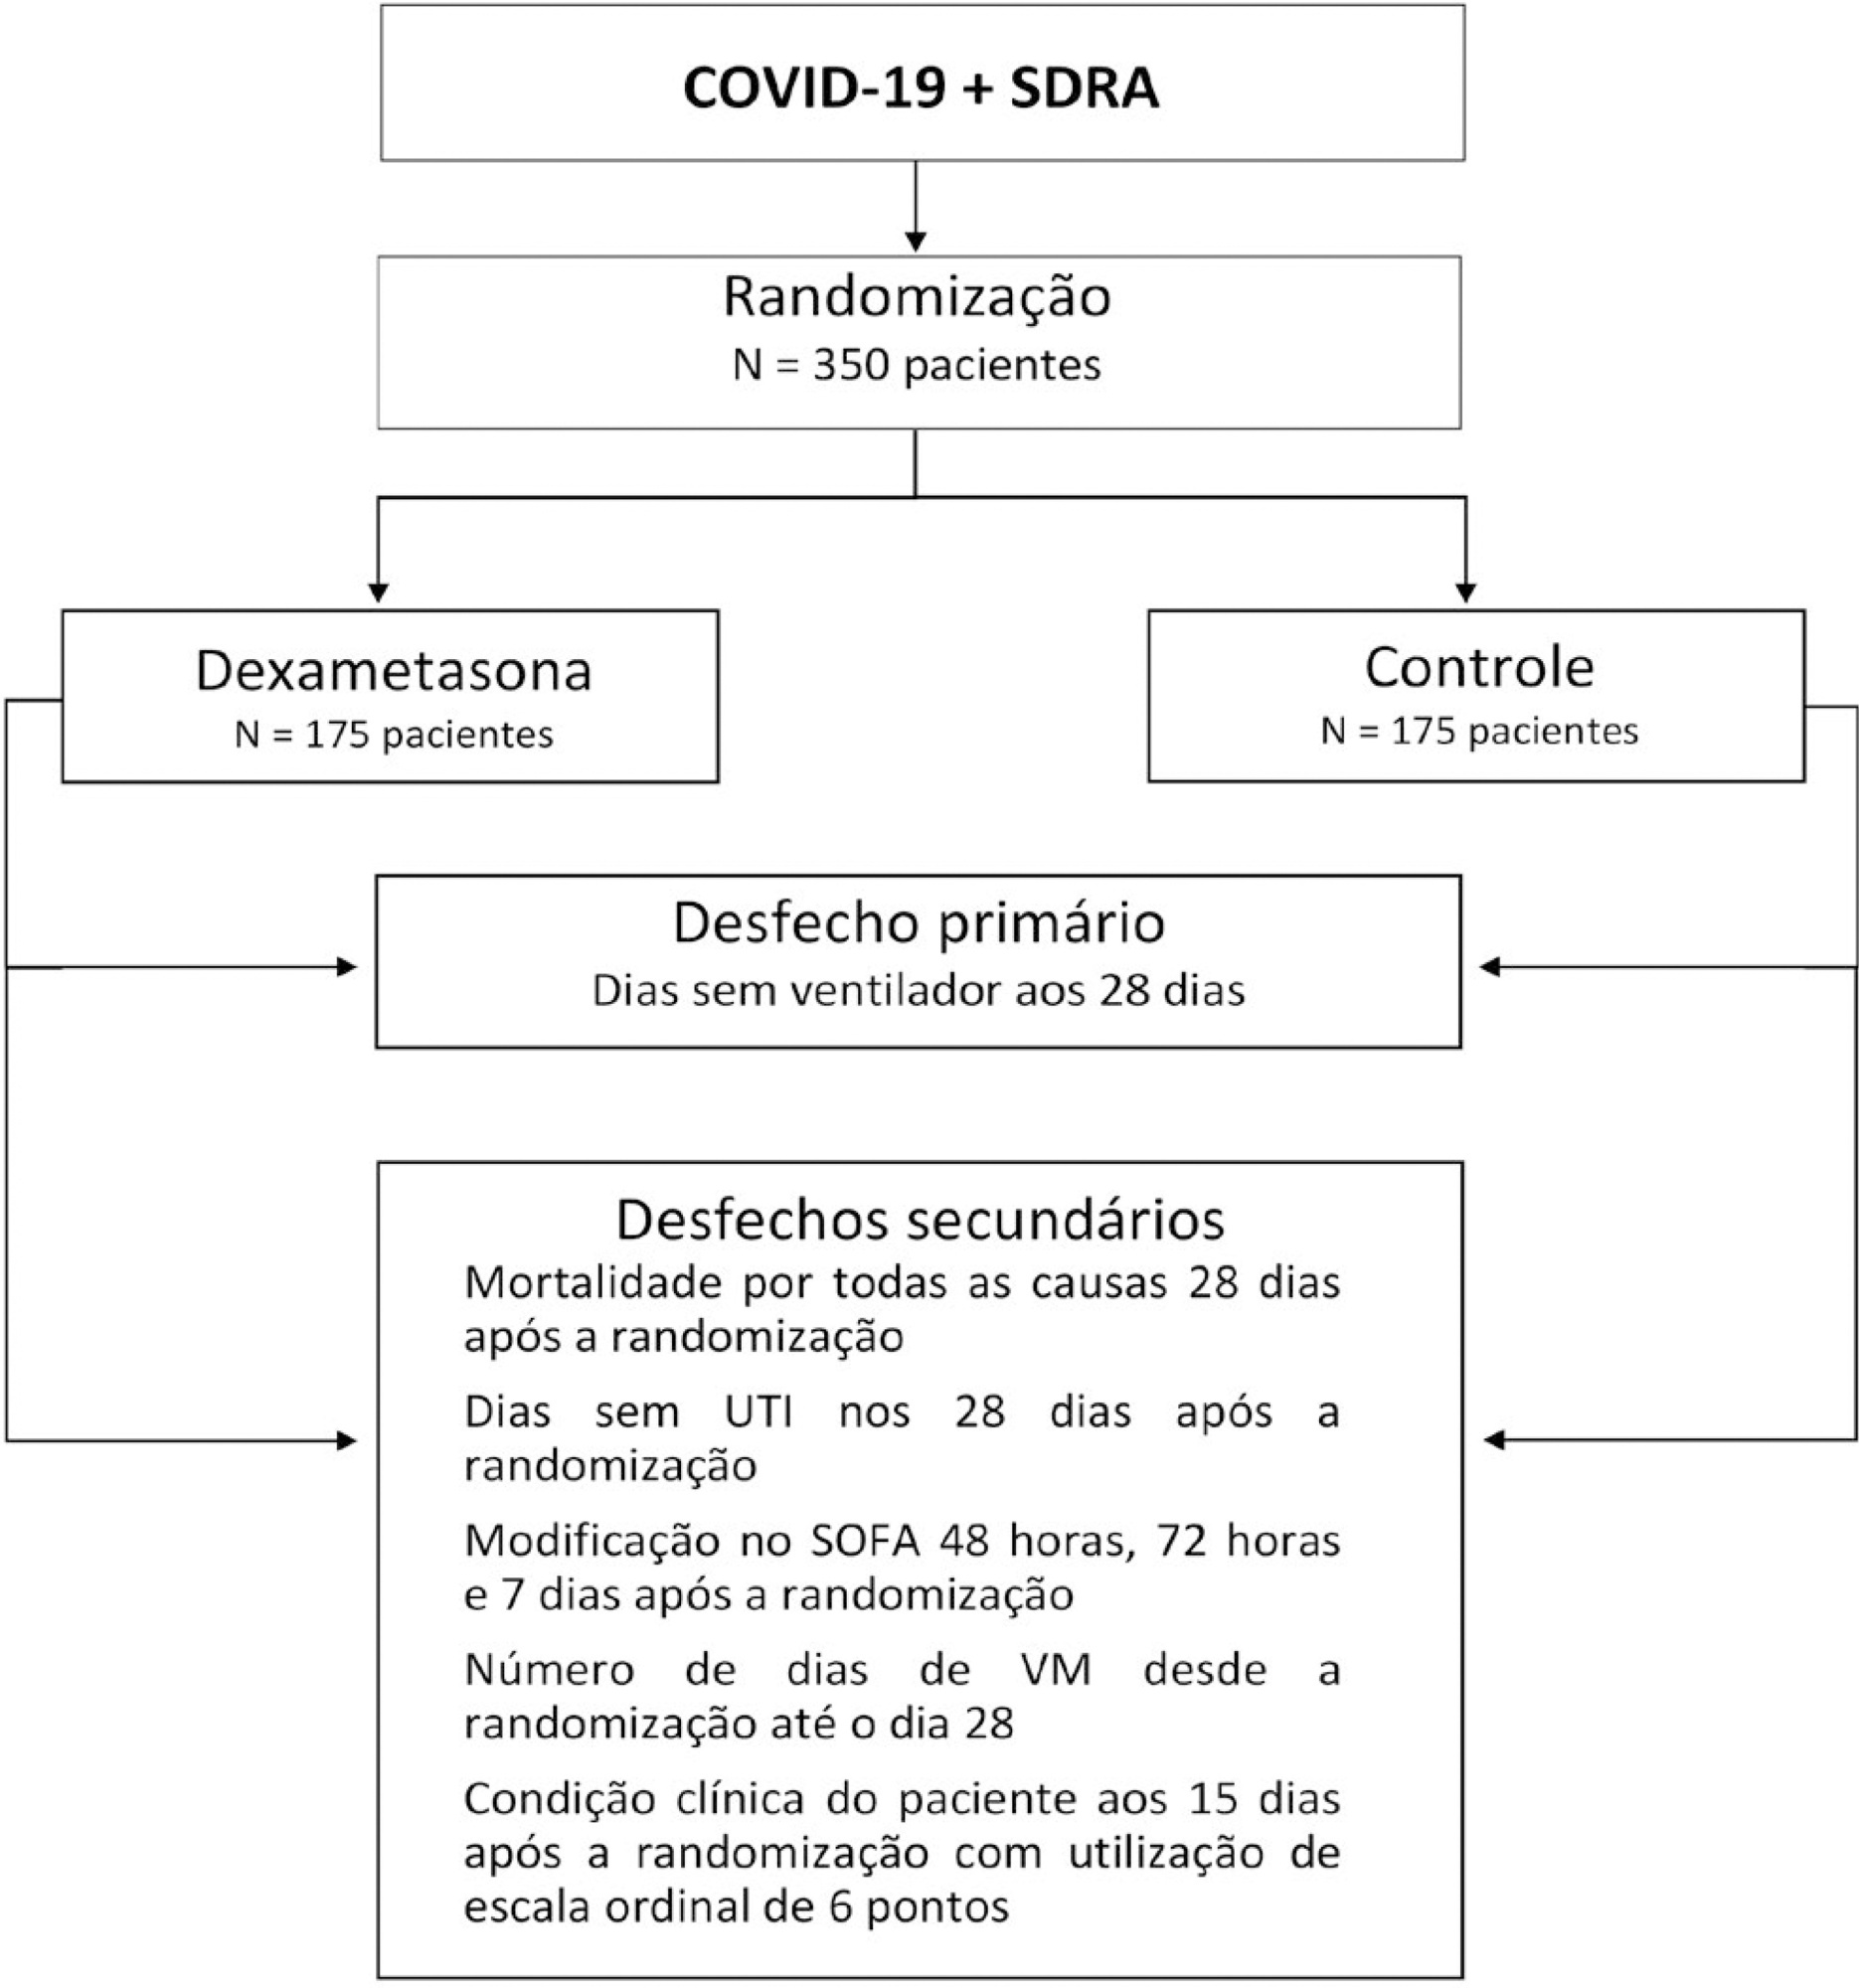 Síndrome do desconforto respiratório agudo associada à COVID-19 tratada com DEXametasona (CoDEX): delineamento e justificativa de um estudo randomizado